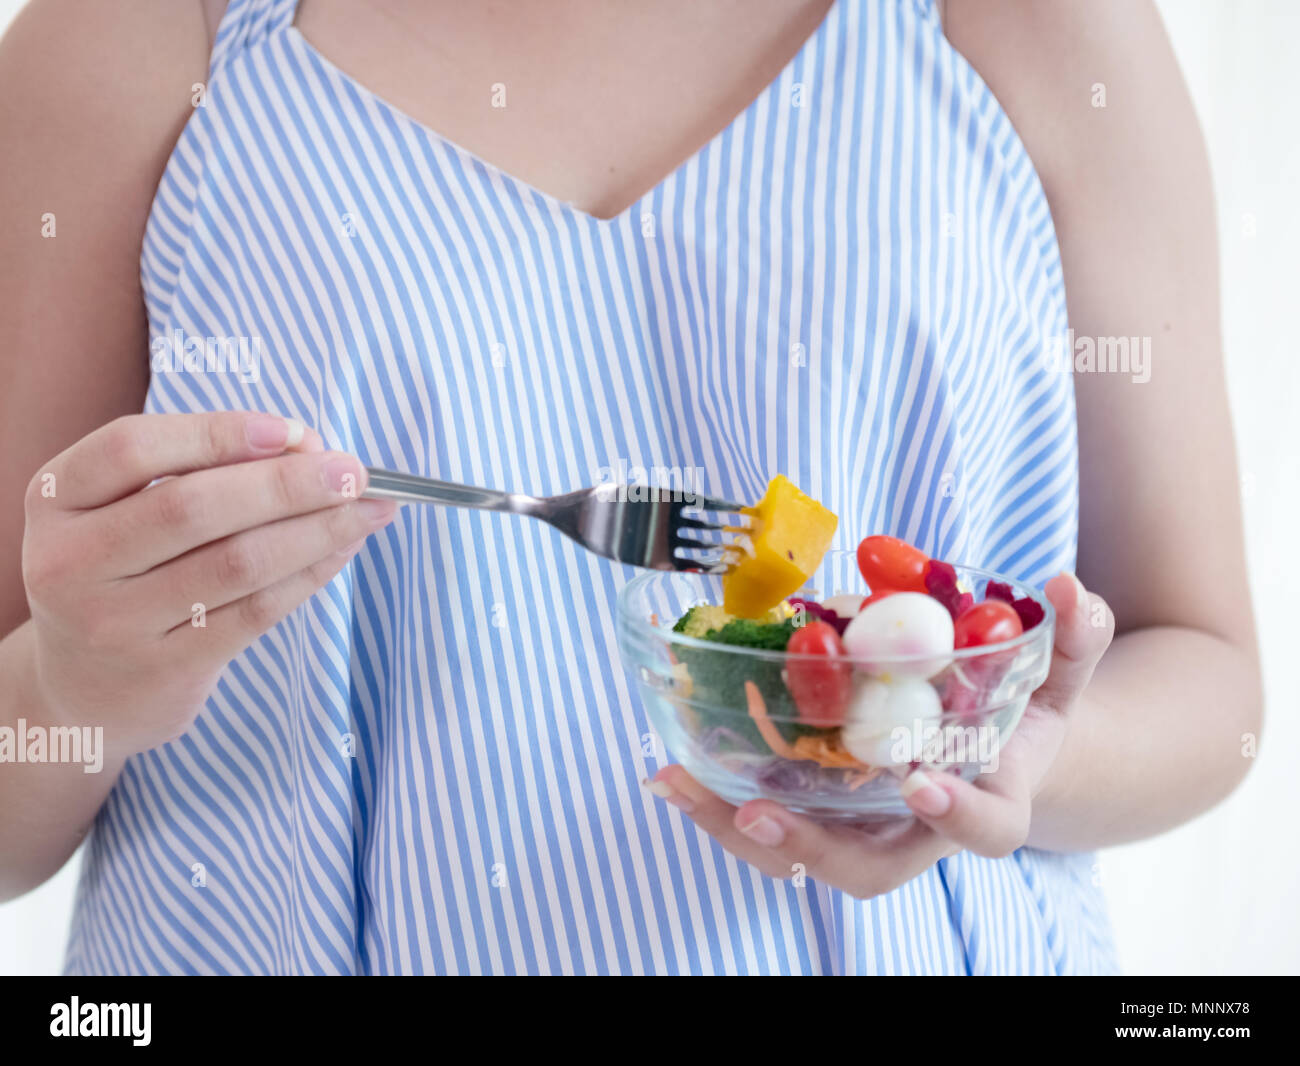 Donna incinta mangiar sano insalata fresca,sana nutrizione durante la gravidanza Foto Stock